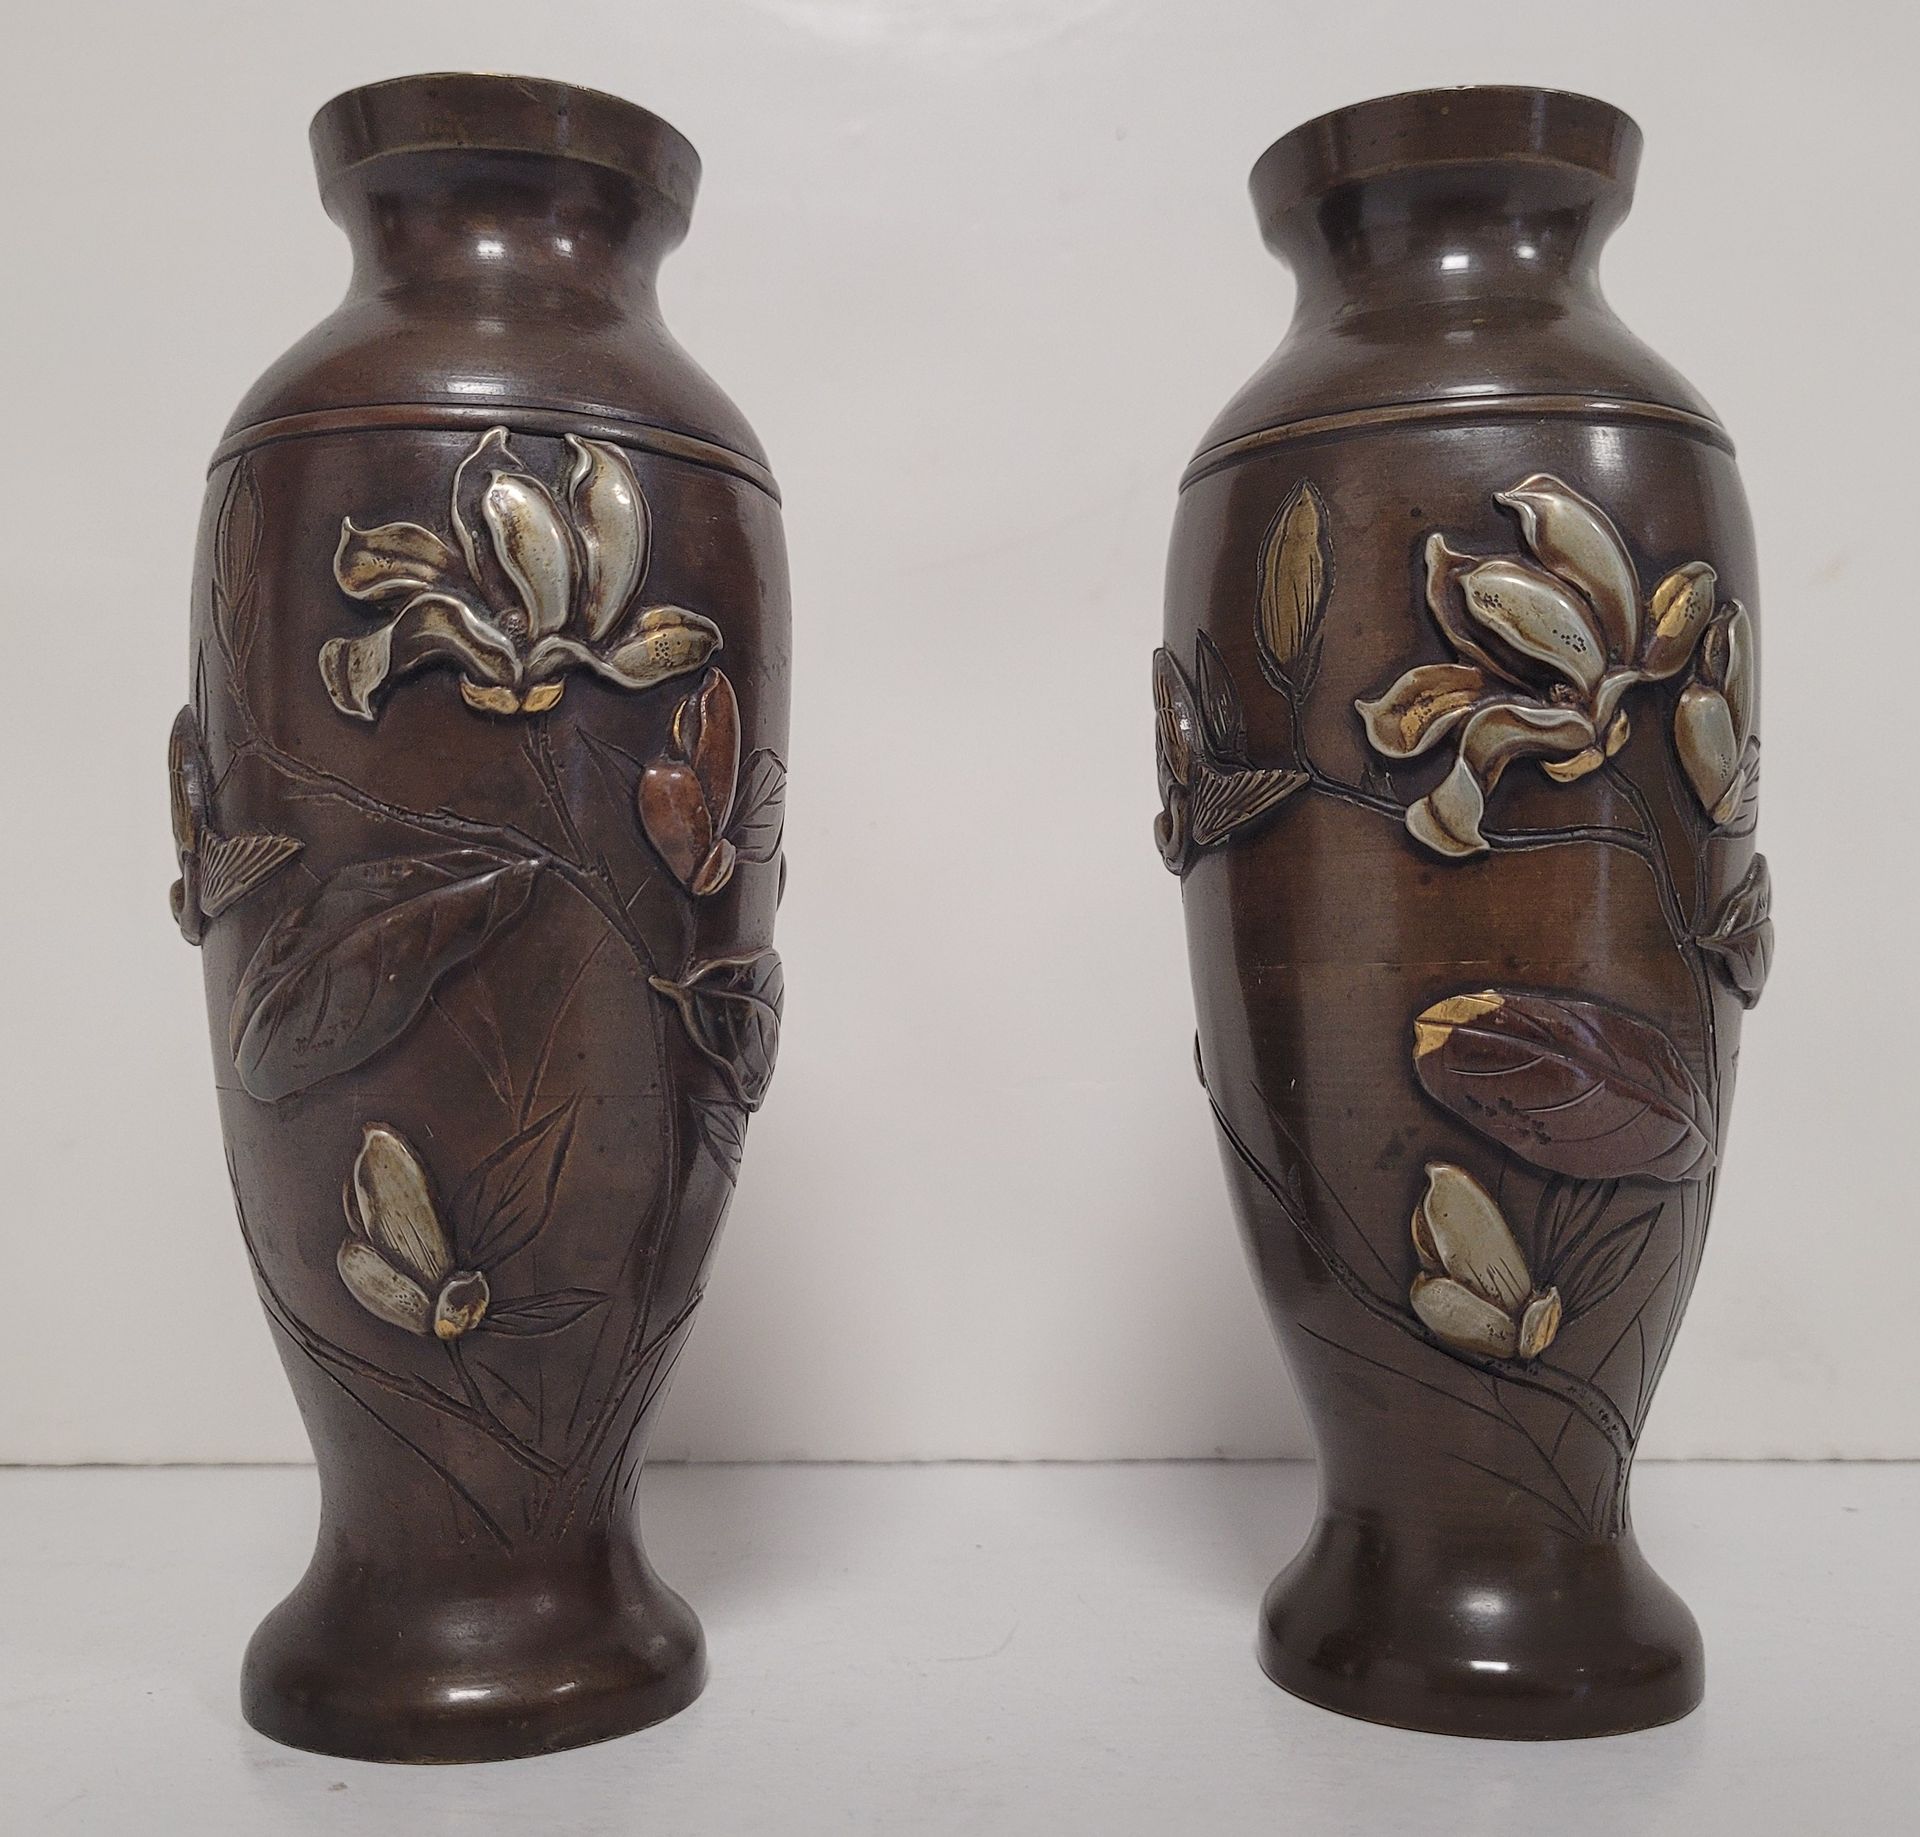 Null 一对小的青铜柱形花瓶，日本，20
世纪
初，
浮雕花枝和鸟
。
 
高度：15
厘米
颈部
轻度畸形的一个。